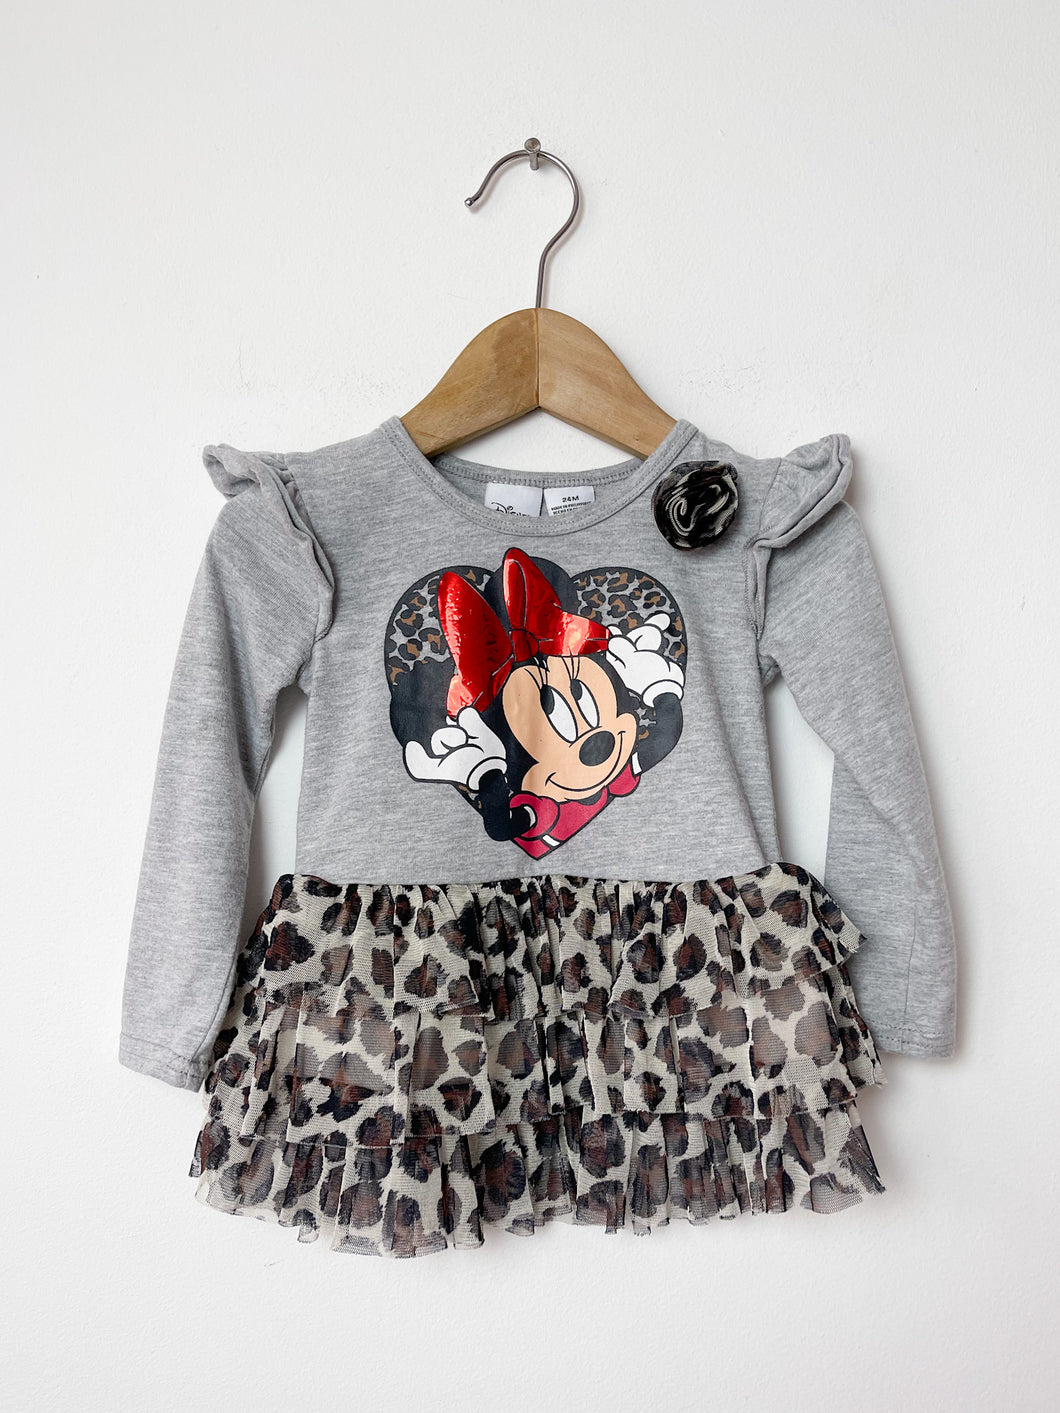 Girls Minnie Mouse Disney Shirt Size 24 Months